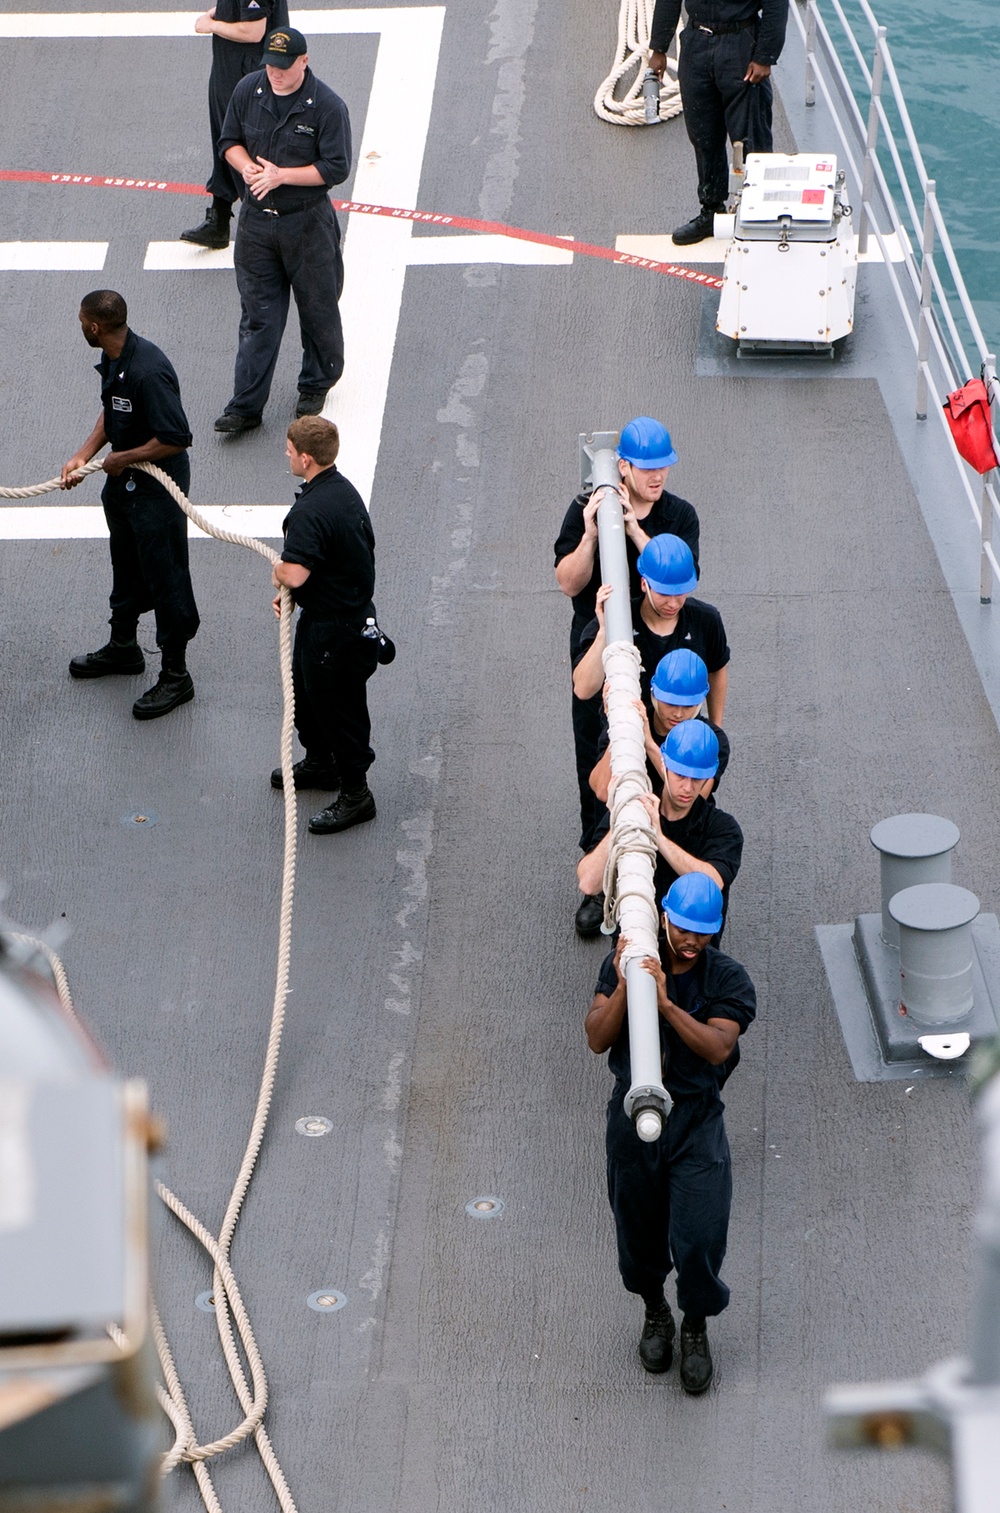 Rear Adm. Kilby Visits USS Lake Champlain (CG 57)